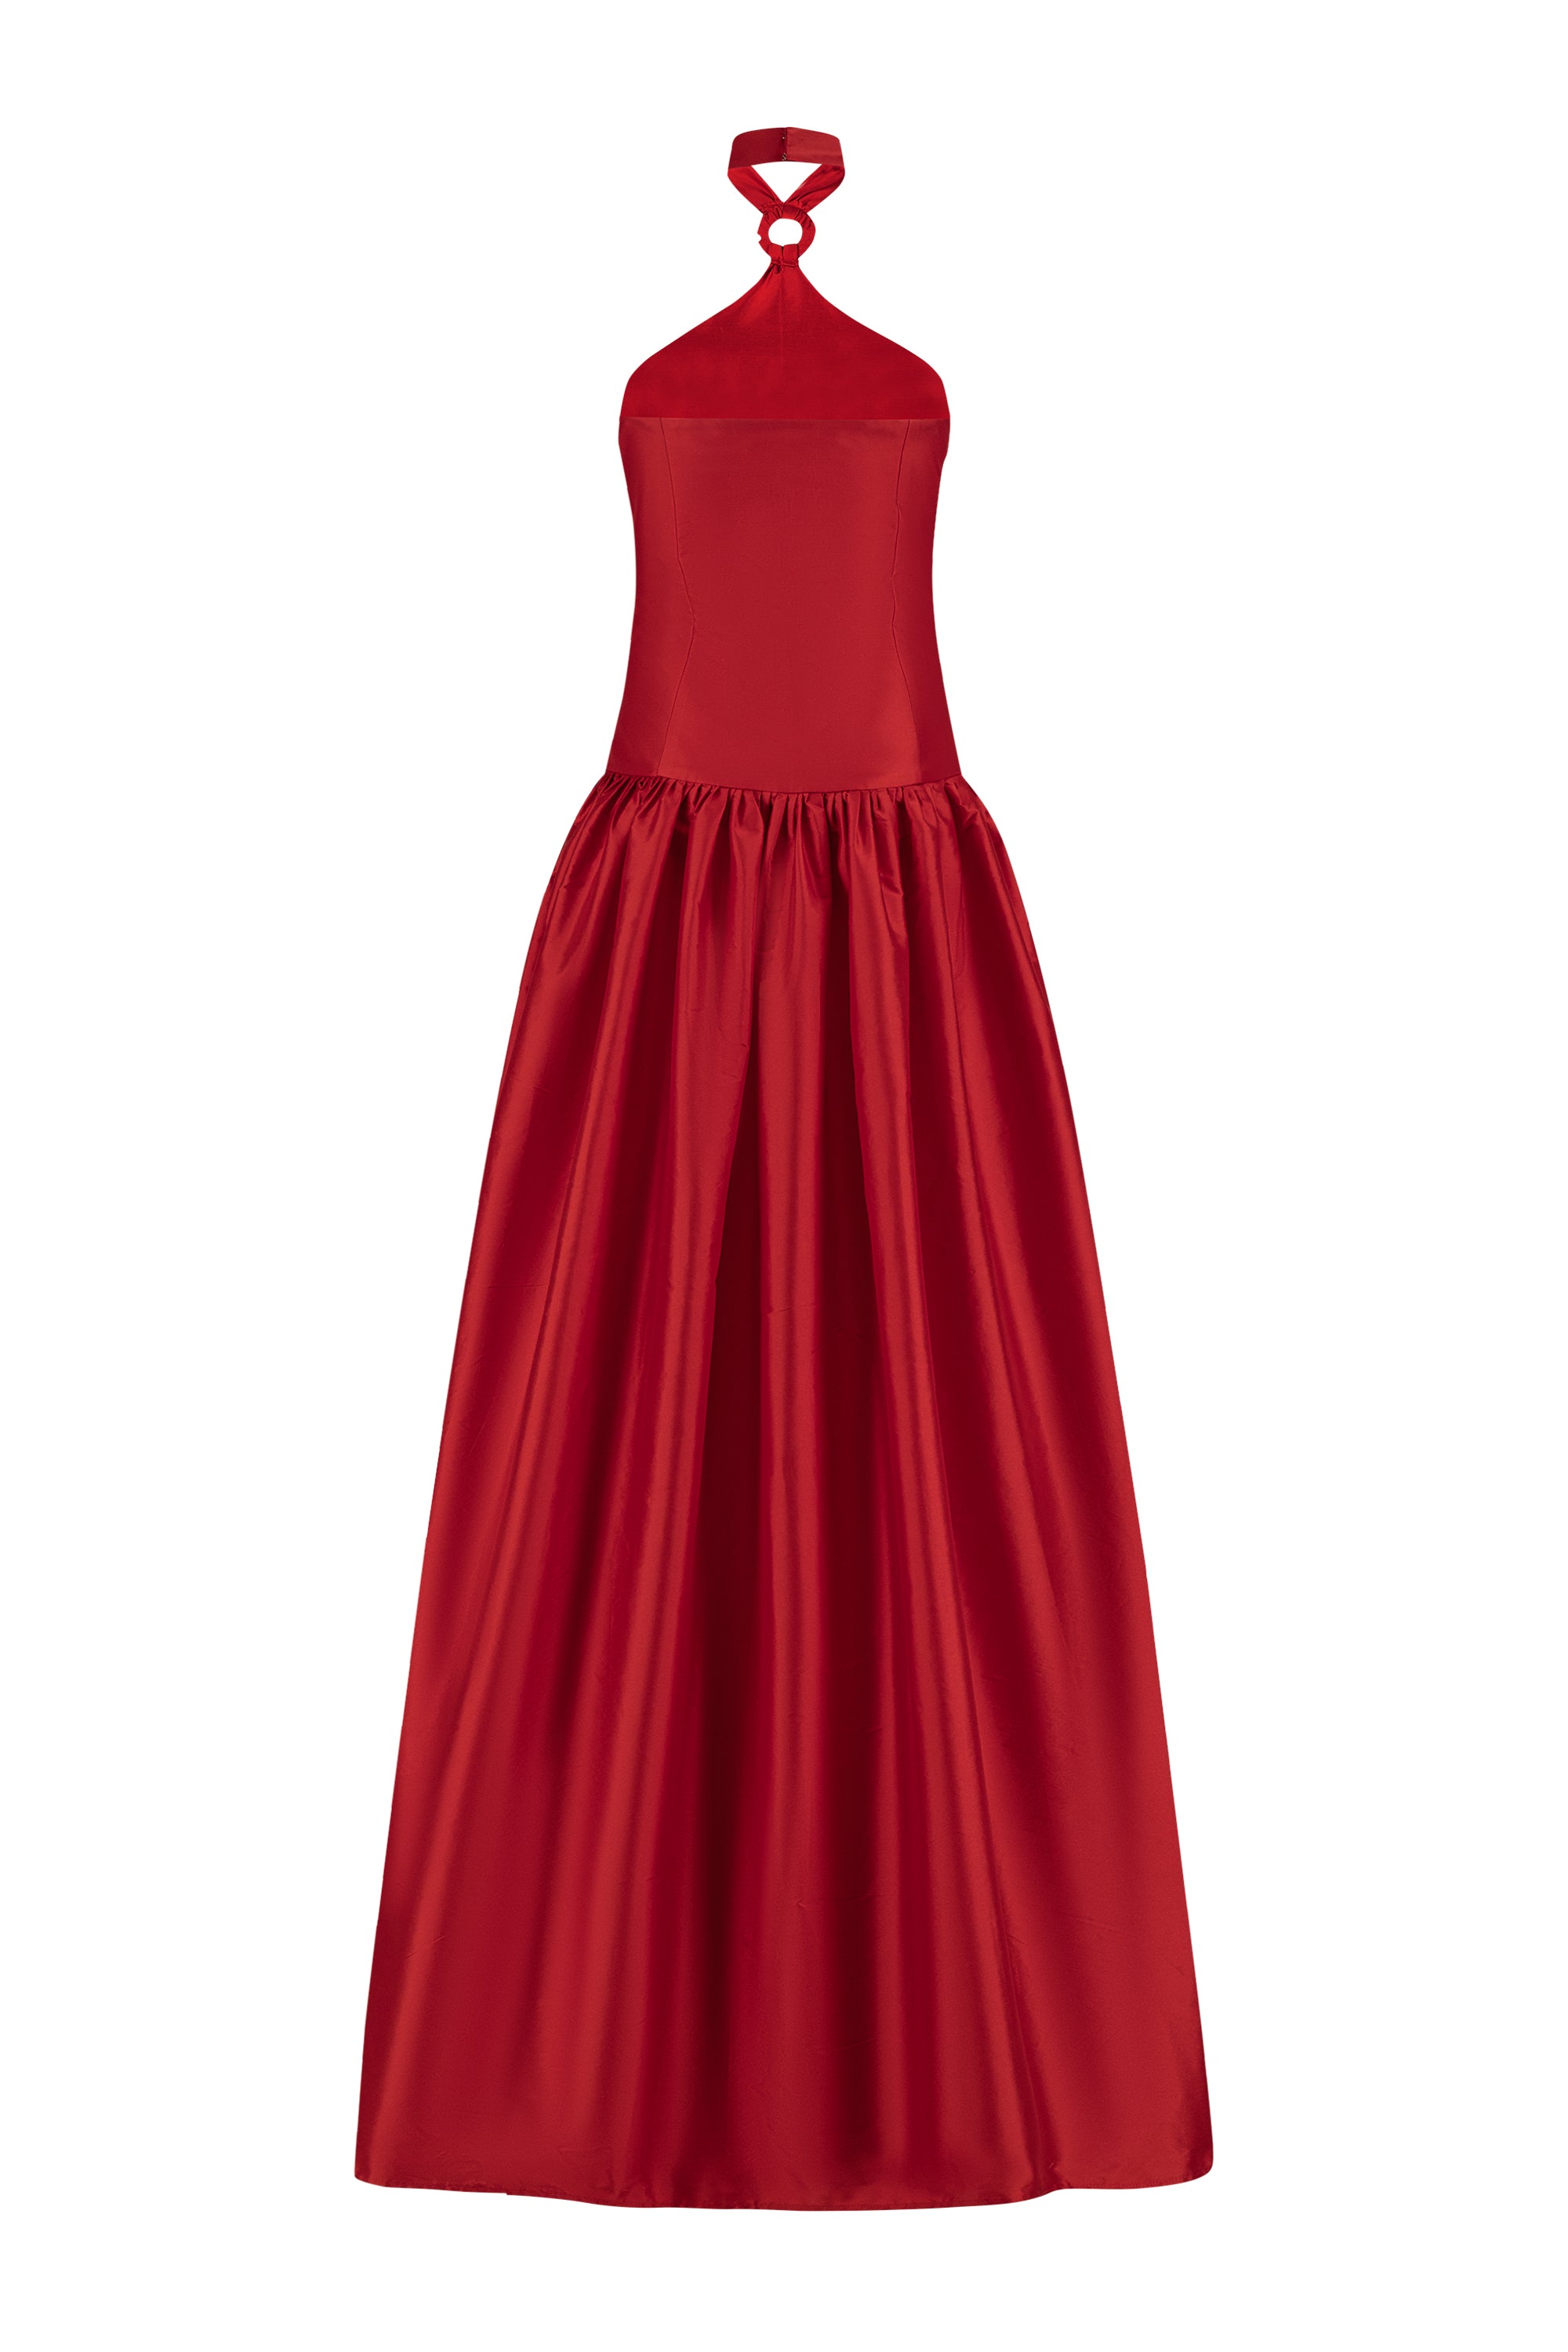 Sonnet Dress Red